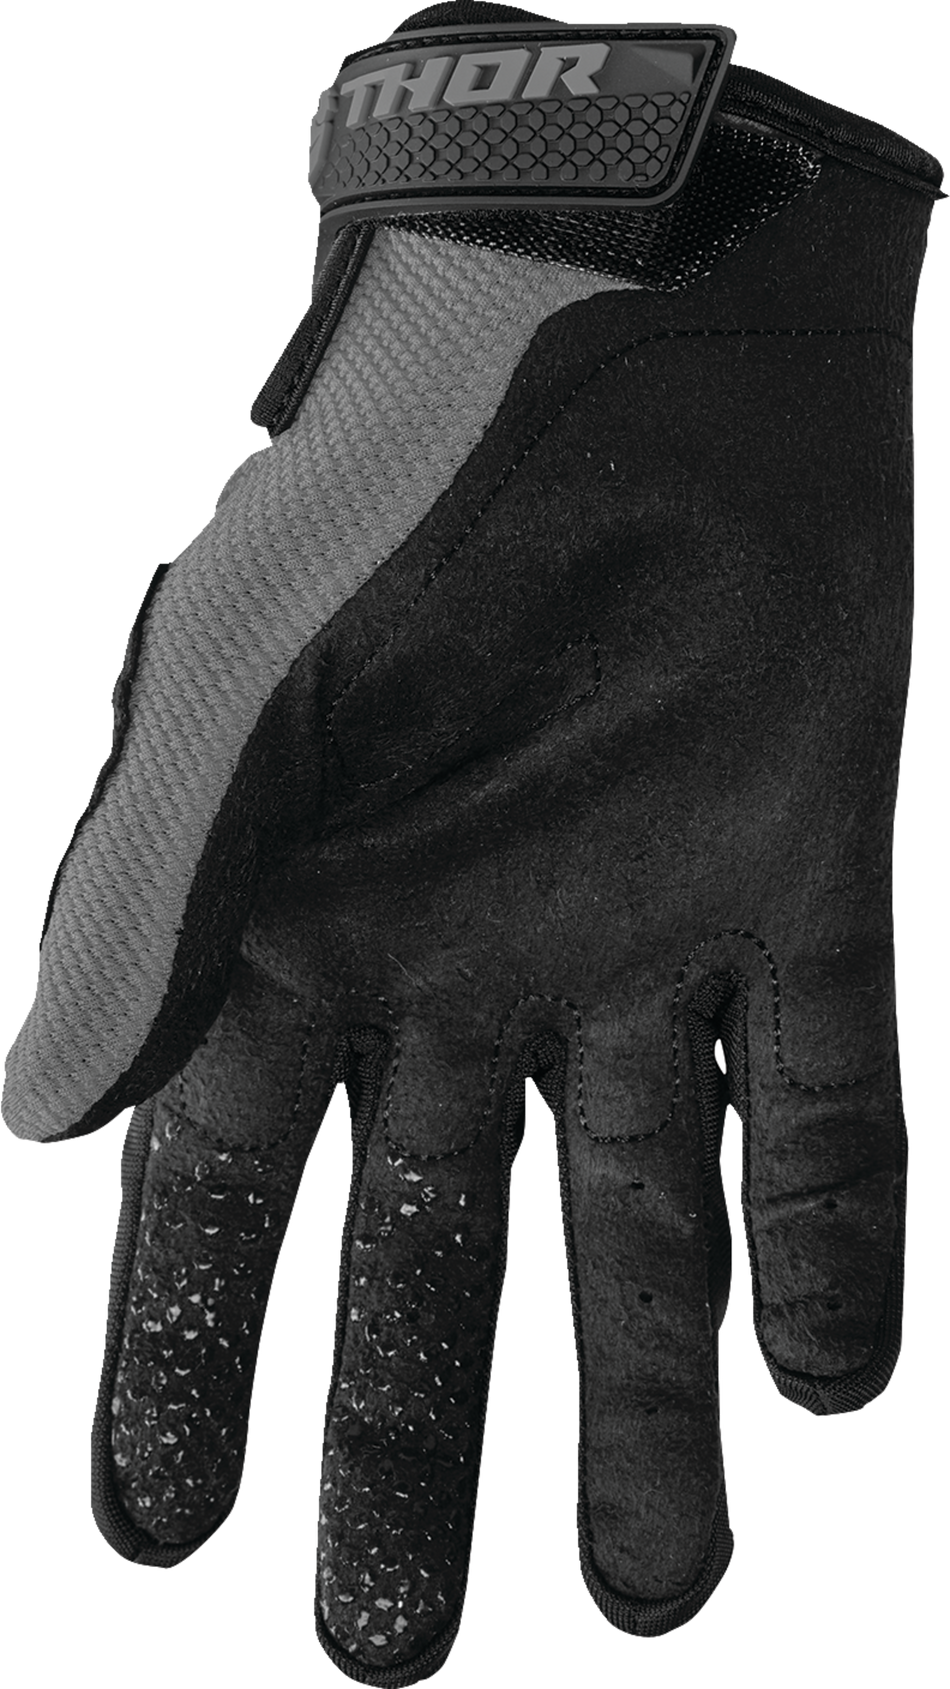 THOR Sector Gloves - Gray/White - Medium 3330-7275